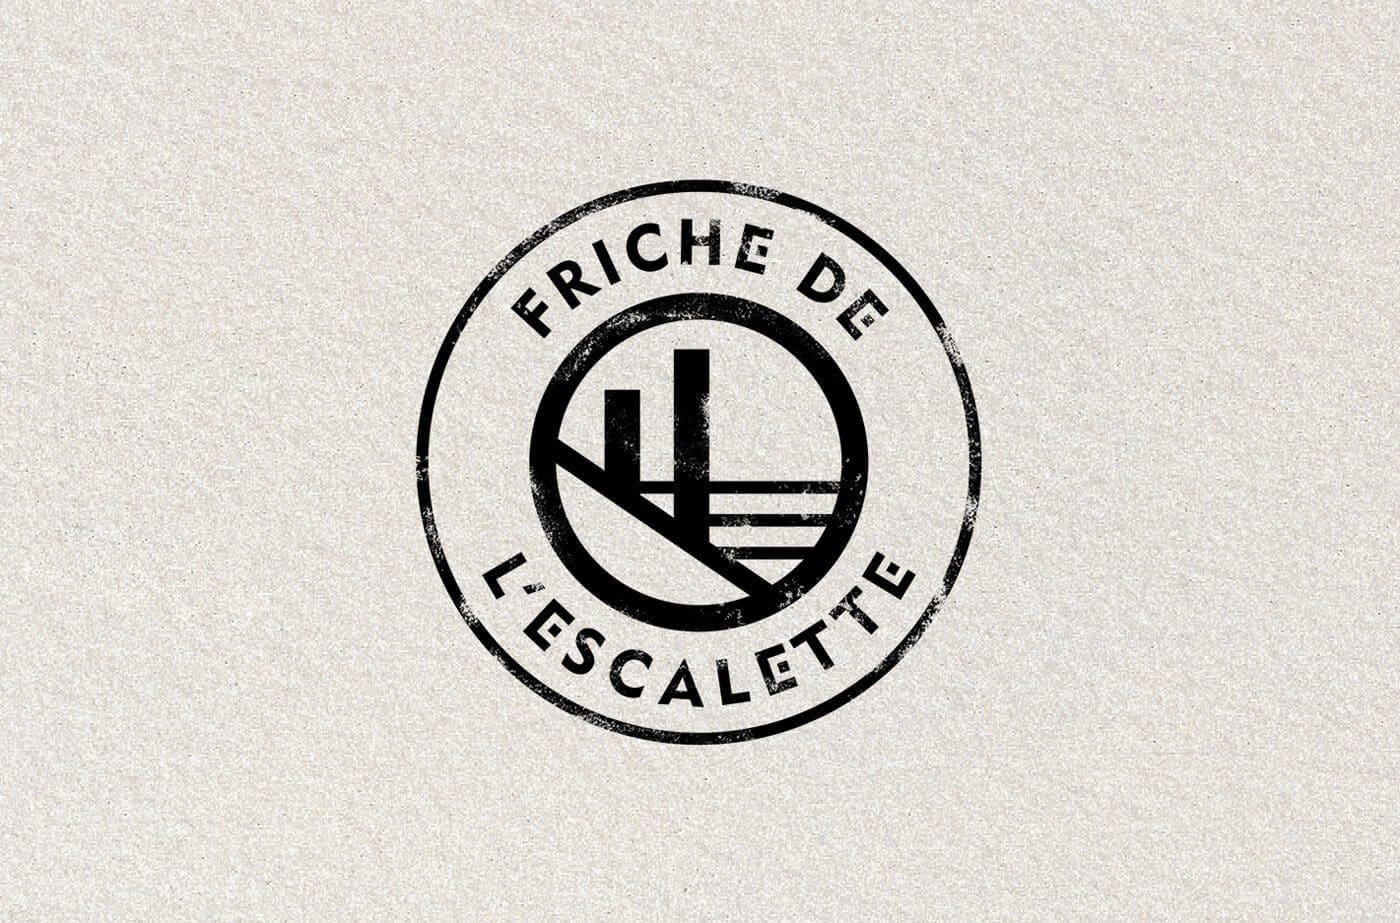 le tampon de le friche de l'escalette à Marseille, design IchetKar